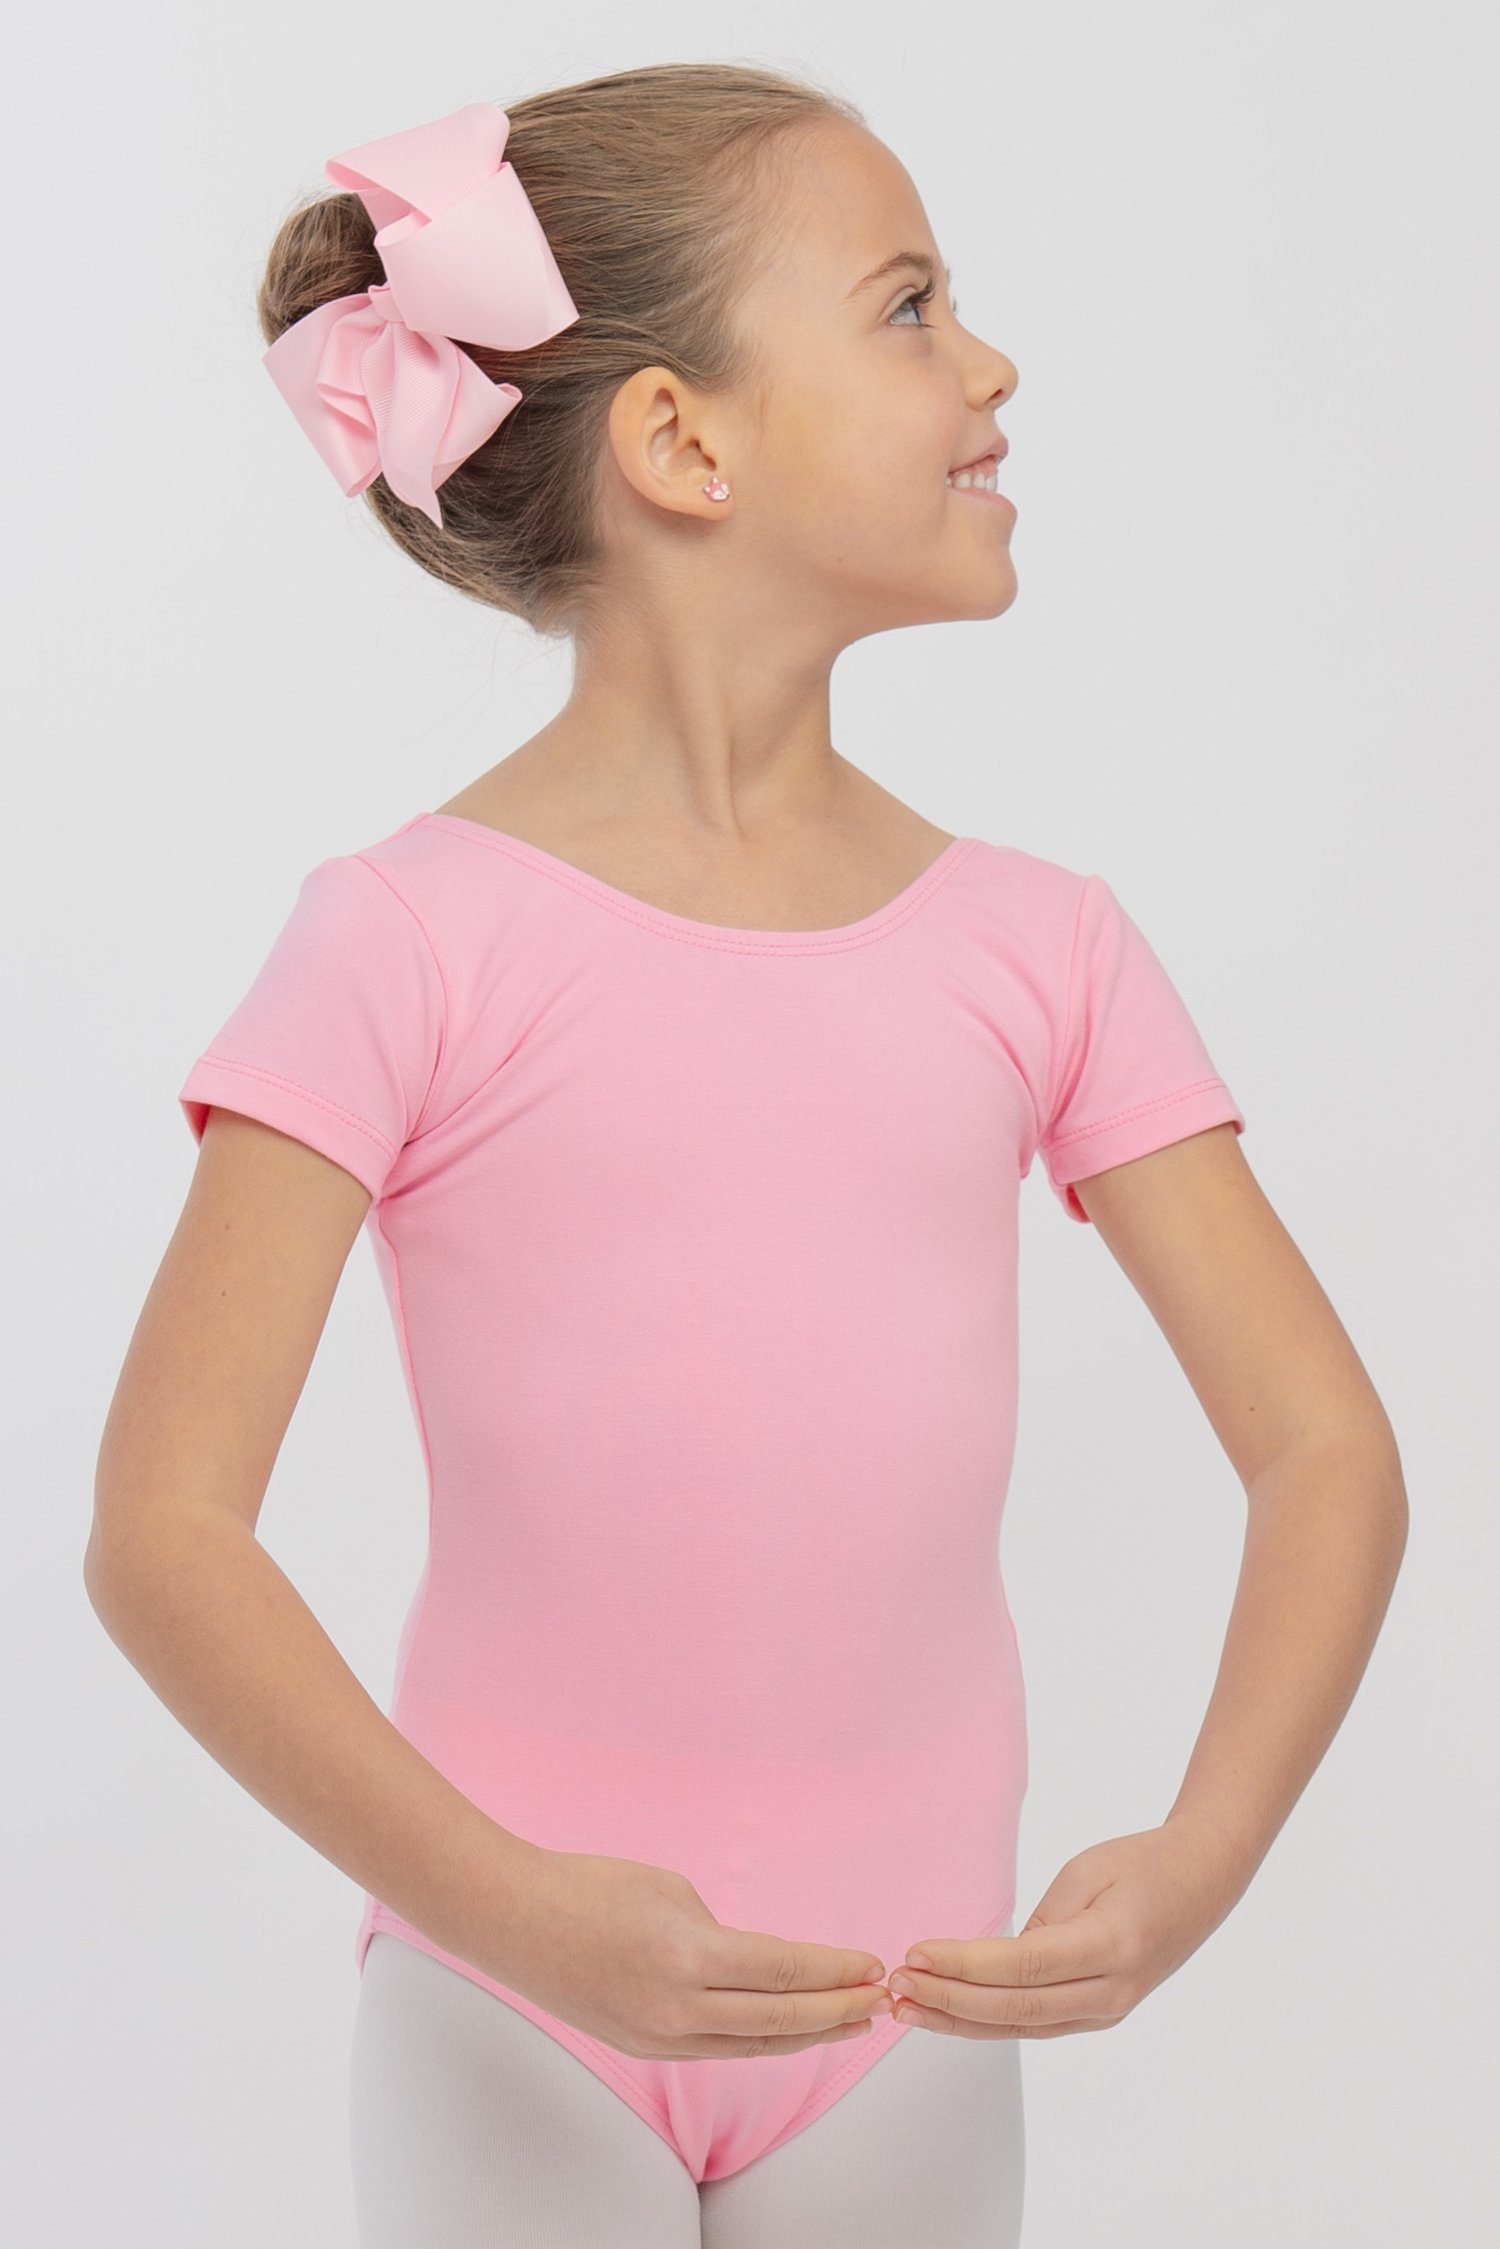 tanzmuster Body Ballettbody Sally aus weicher Baumwolle Kurzarm Trikot fürs Kinder Ballett rosa